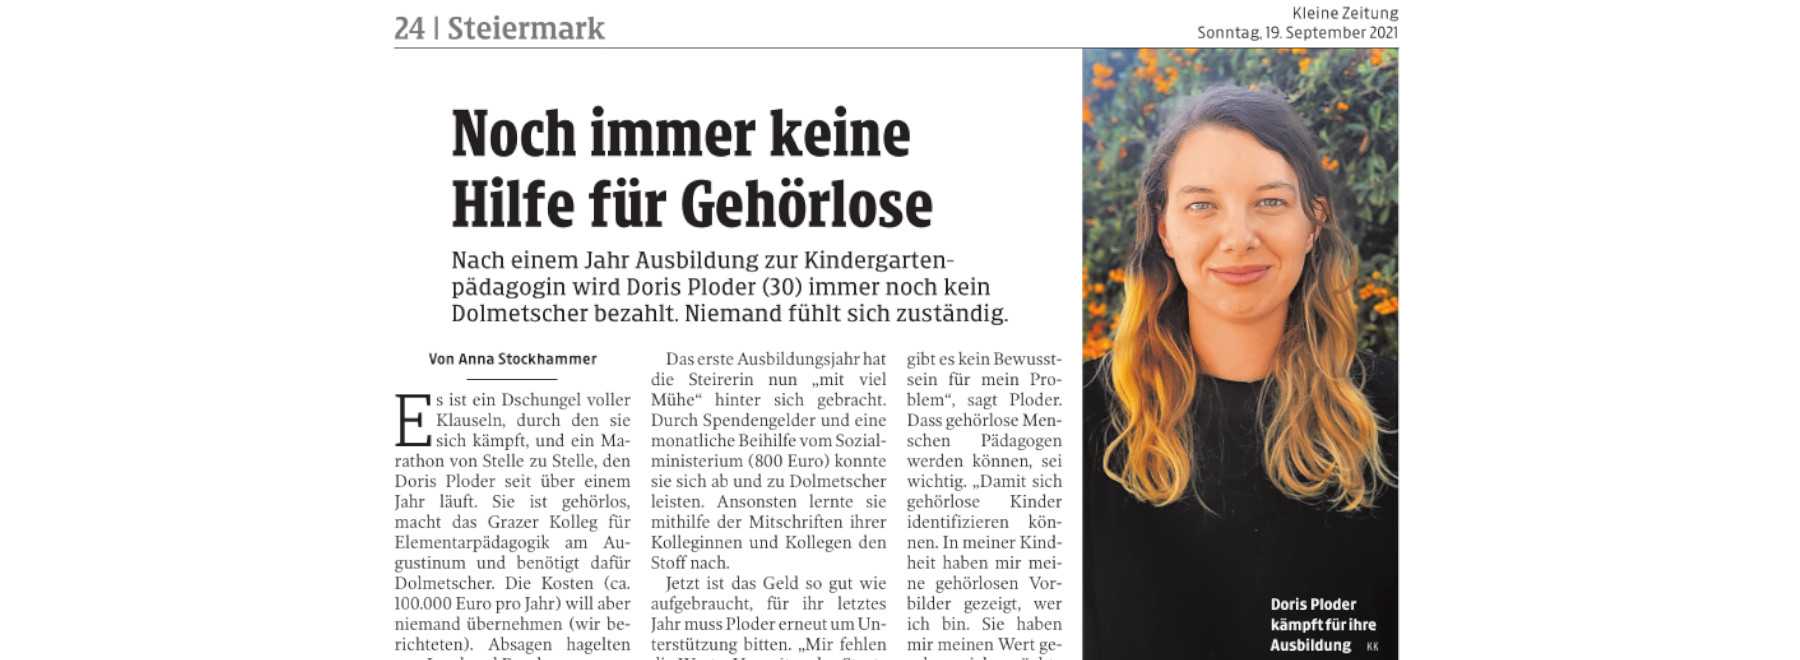 Kleine Zeitung: Doris Ploder kämpft um ihre Ausbildung